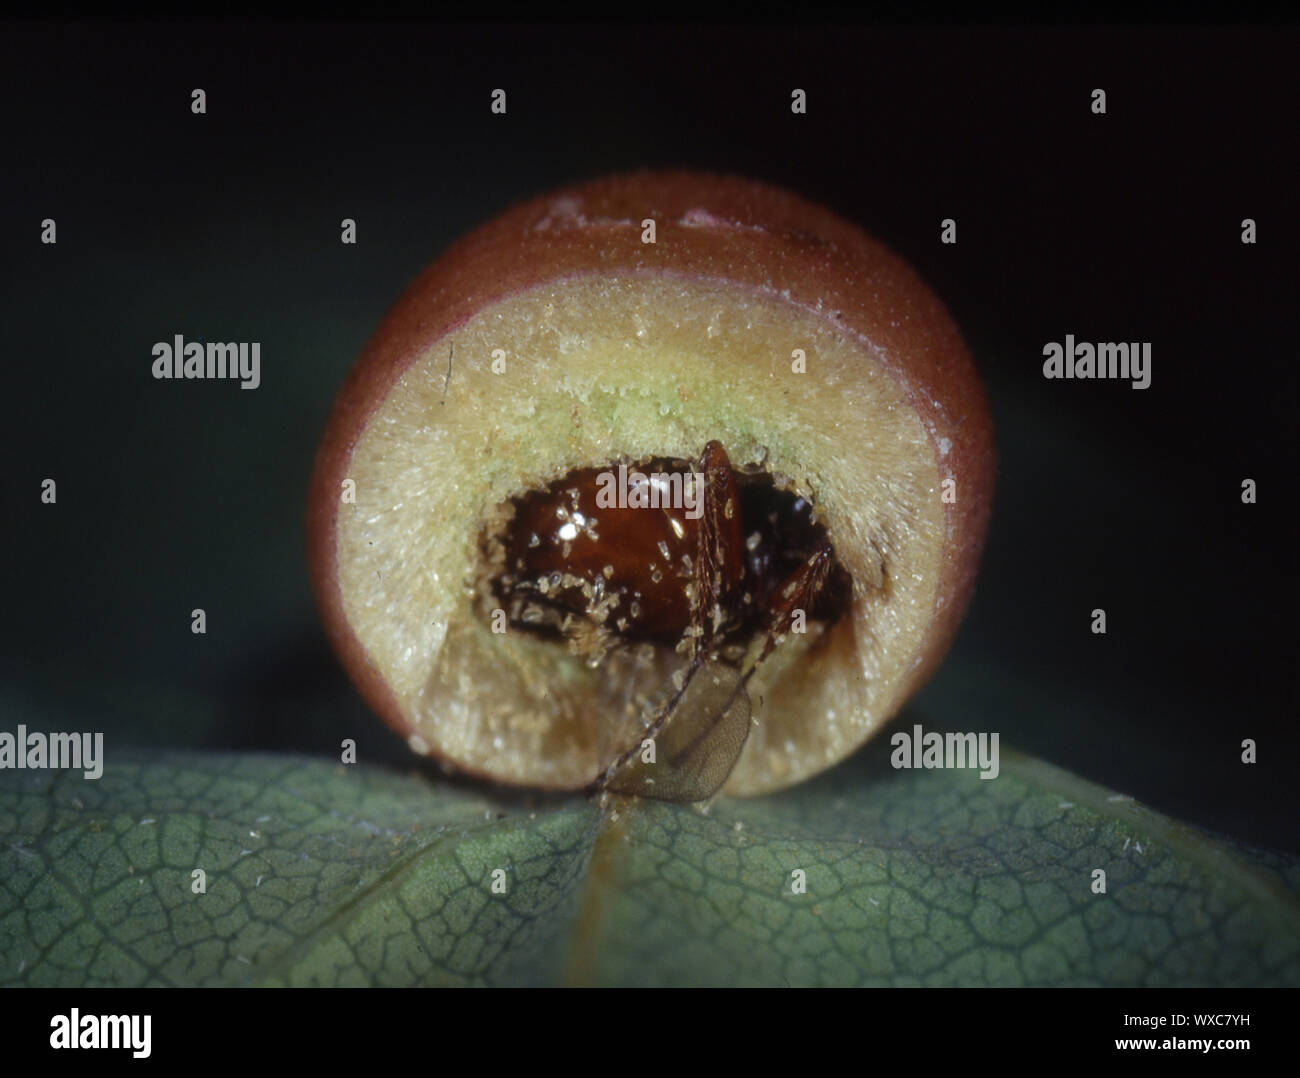 Oak apple con larvas de insectos Foto de stock